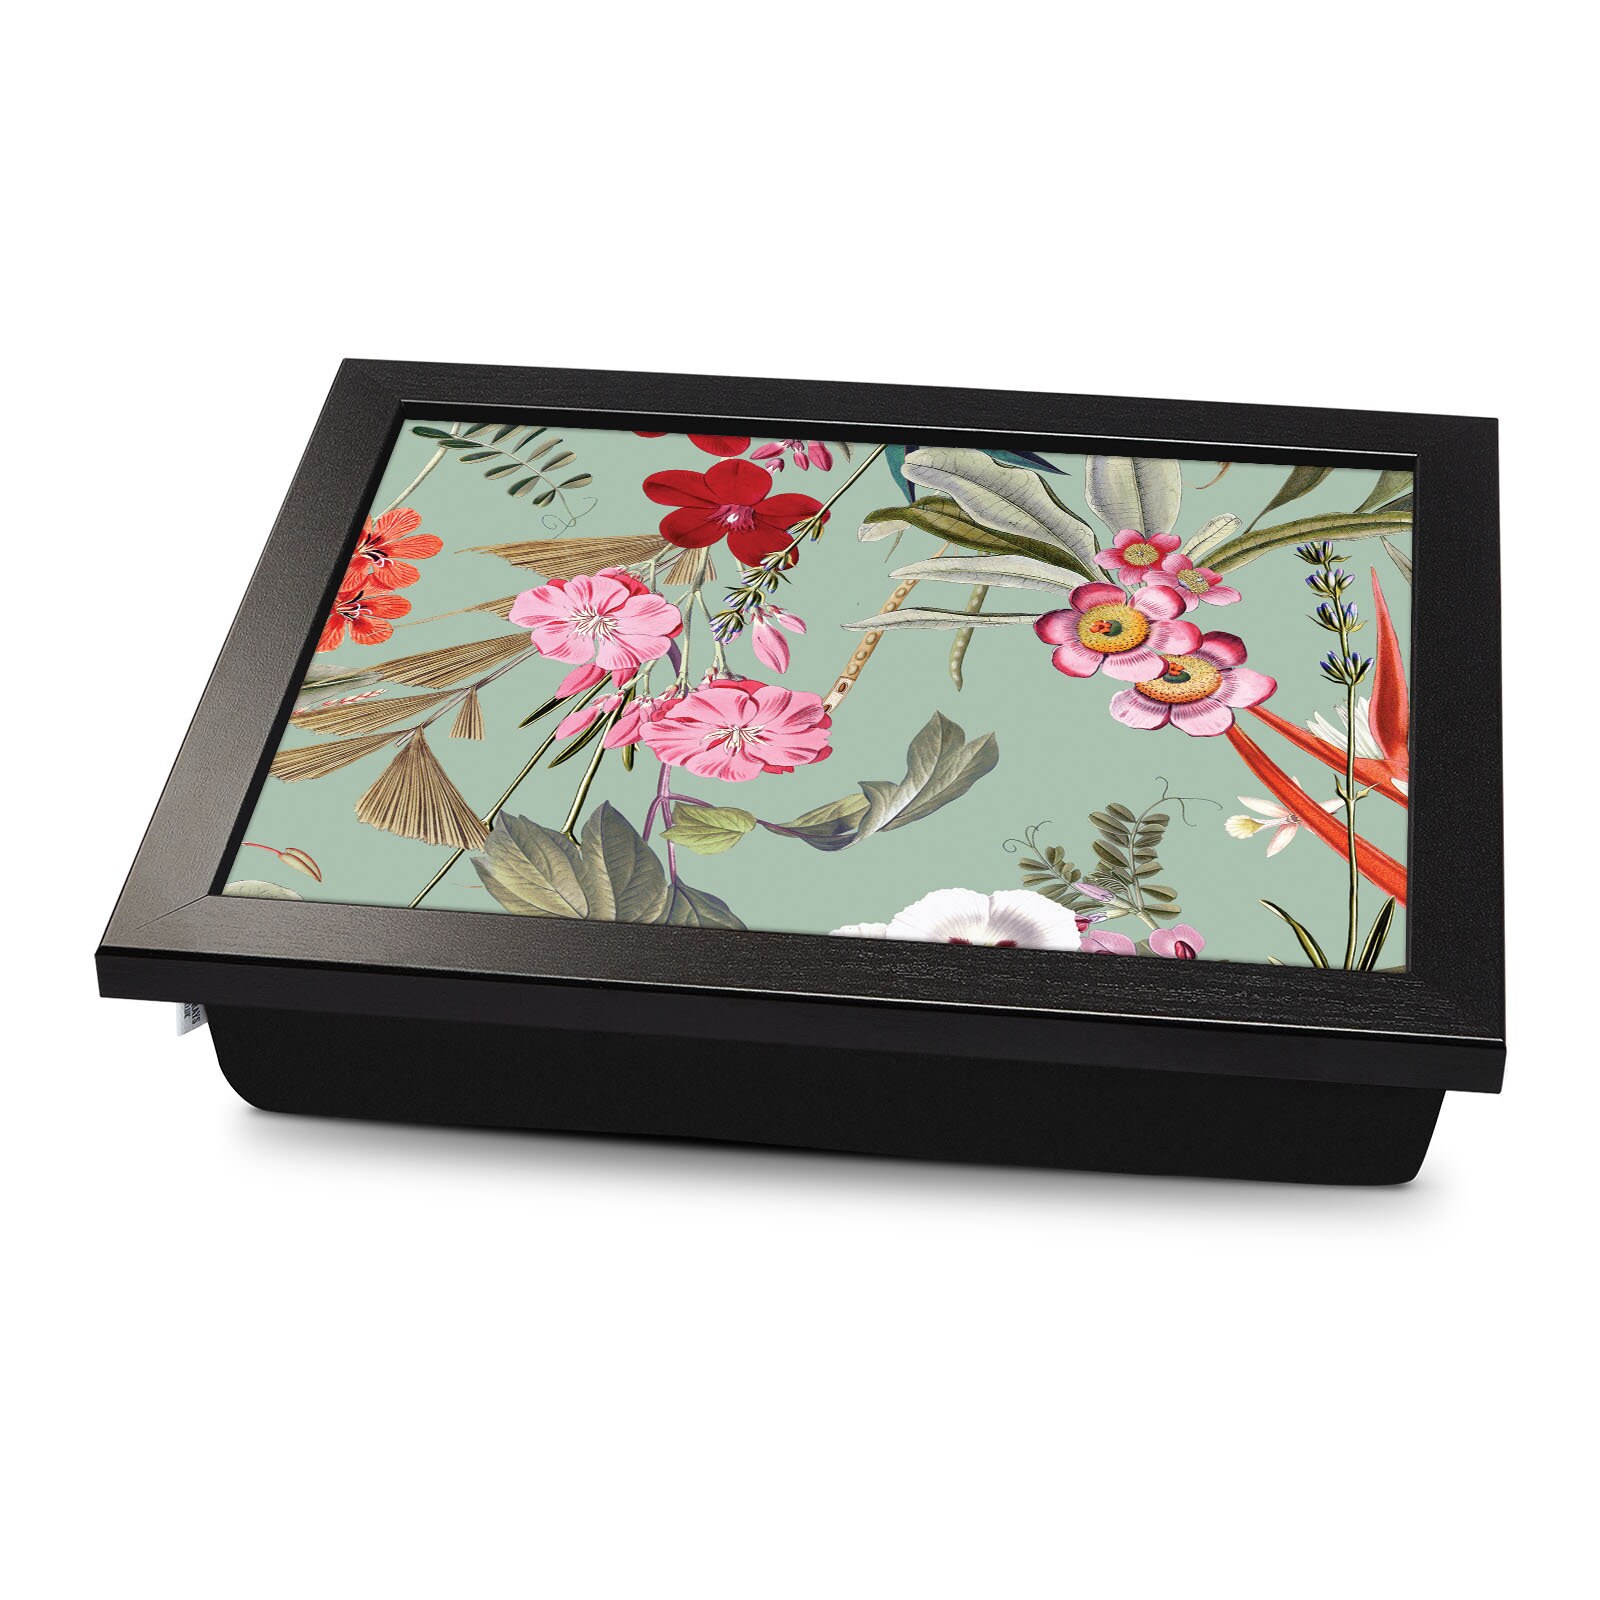 Laser-engraved Wood Lap Desk, Lap Board Floral Design 